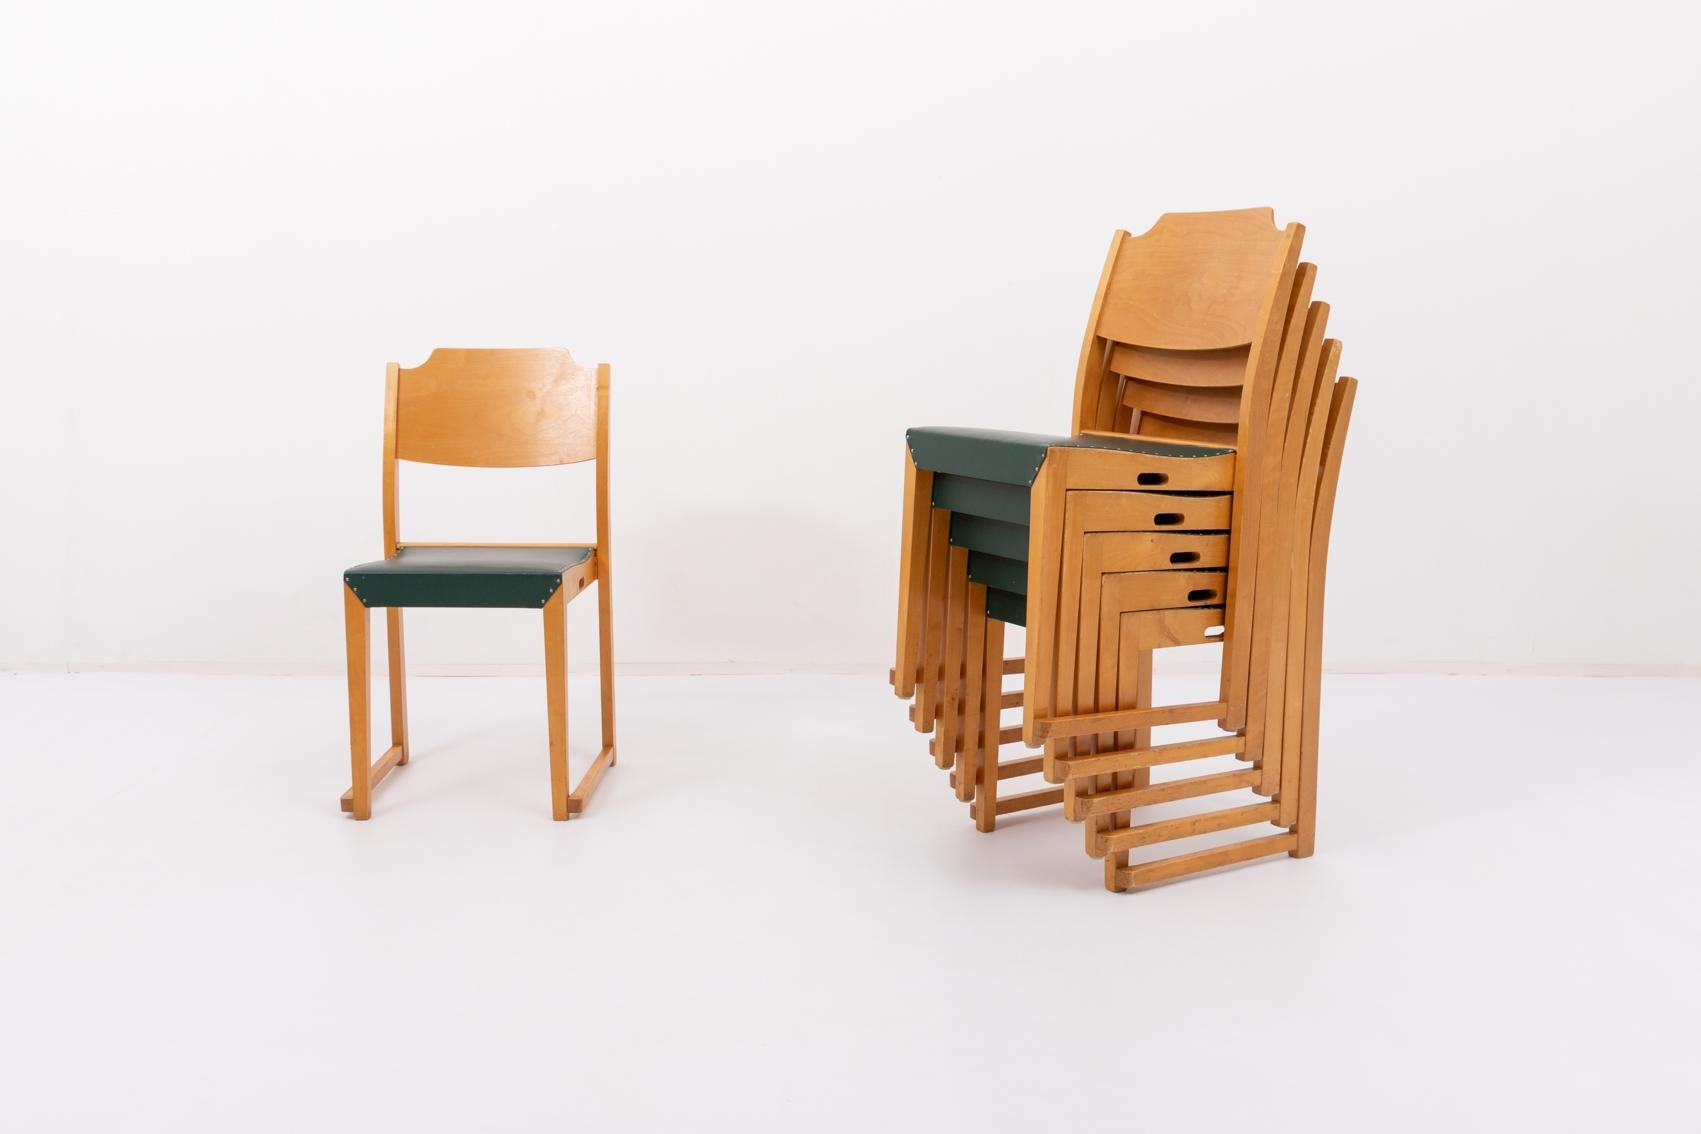 Ensemble de six chaises empilables conçues par Herman Seeck pour Asko, Finlande, années 1950. Le cadre est en bouleau verni et le siège est recouvert de galon vert.

Prix par lot de 6.

Condit
Bon, usure et marques liées à l'âge

Dimensions
largeur